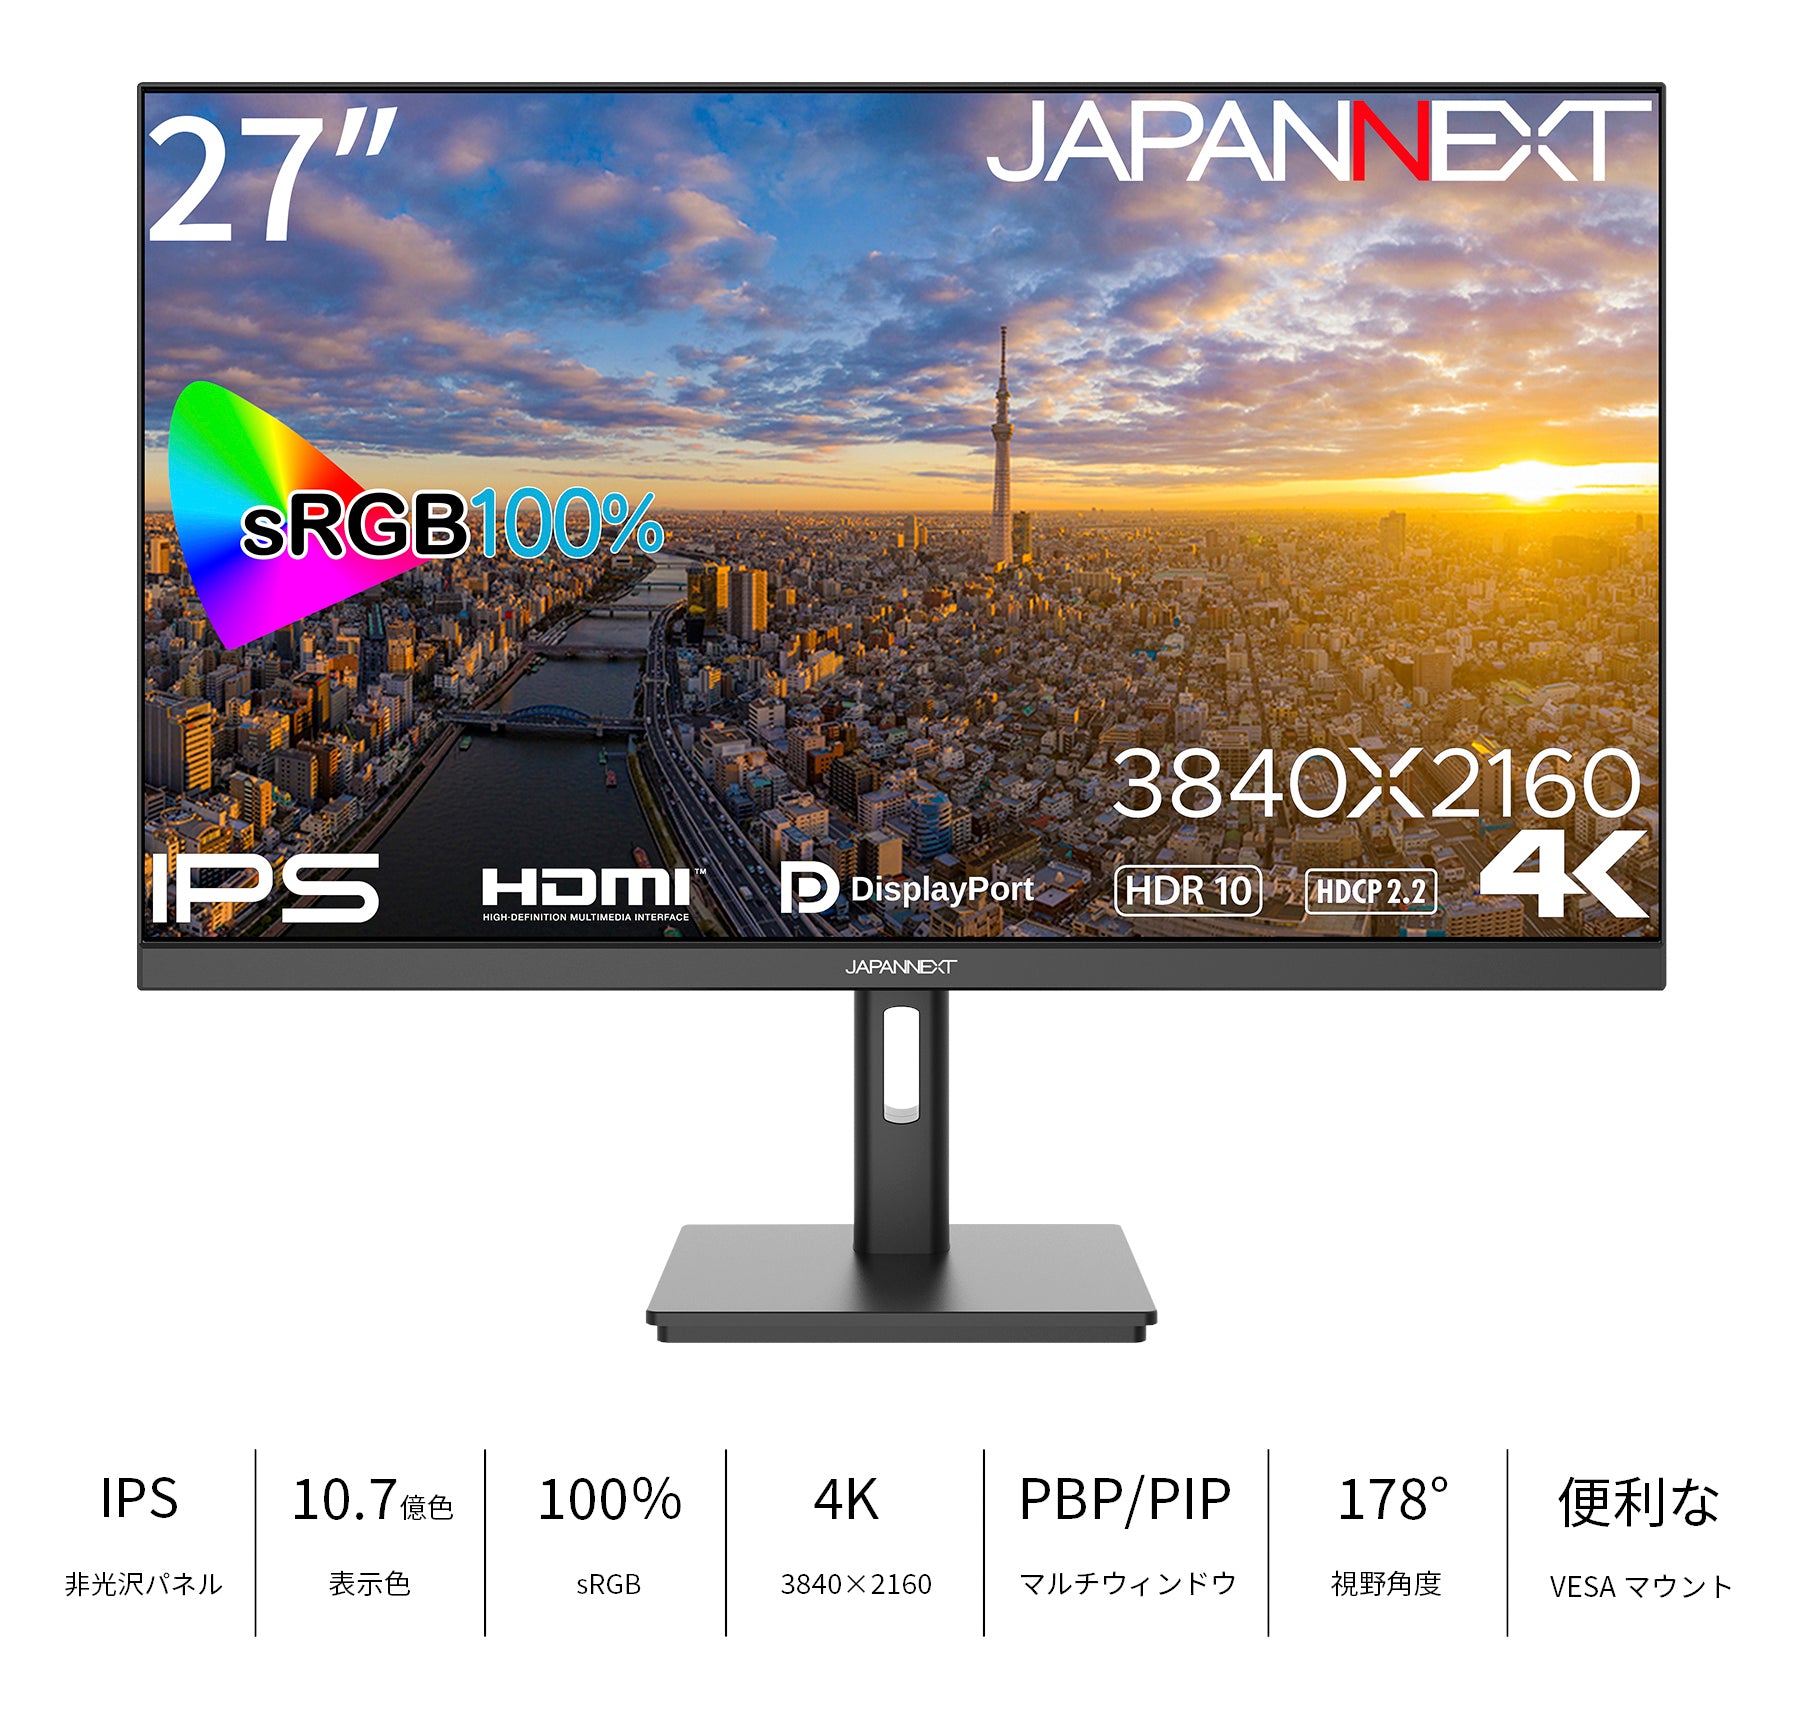 JAPANNEXT 27インチ IPSパネル搭載 4K(3840x2160)解像度 液晶モニター ...